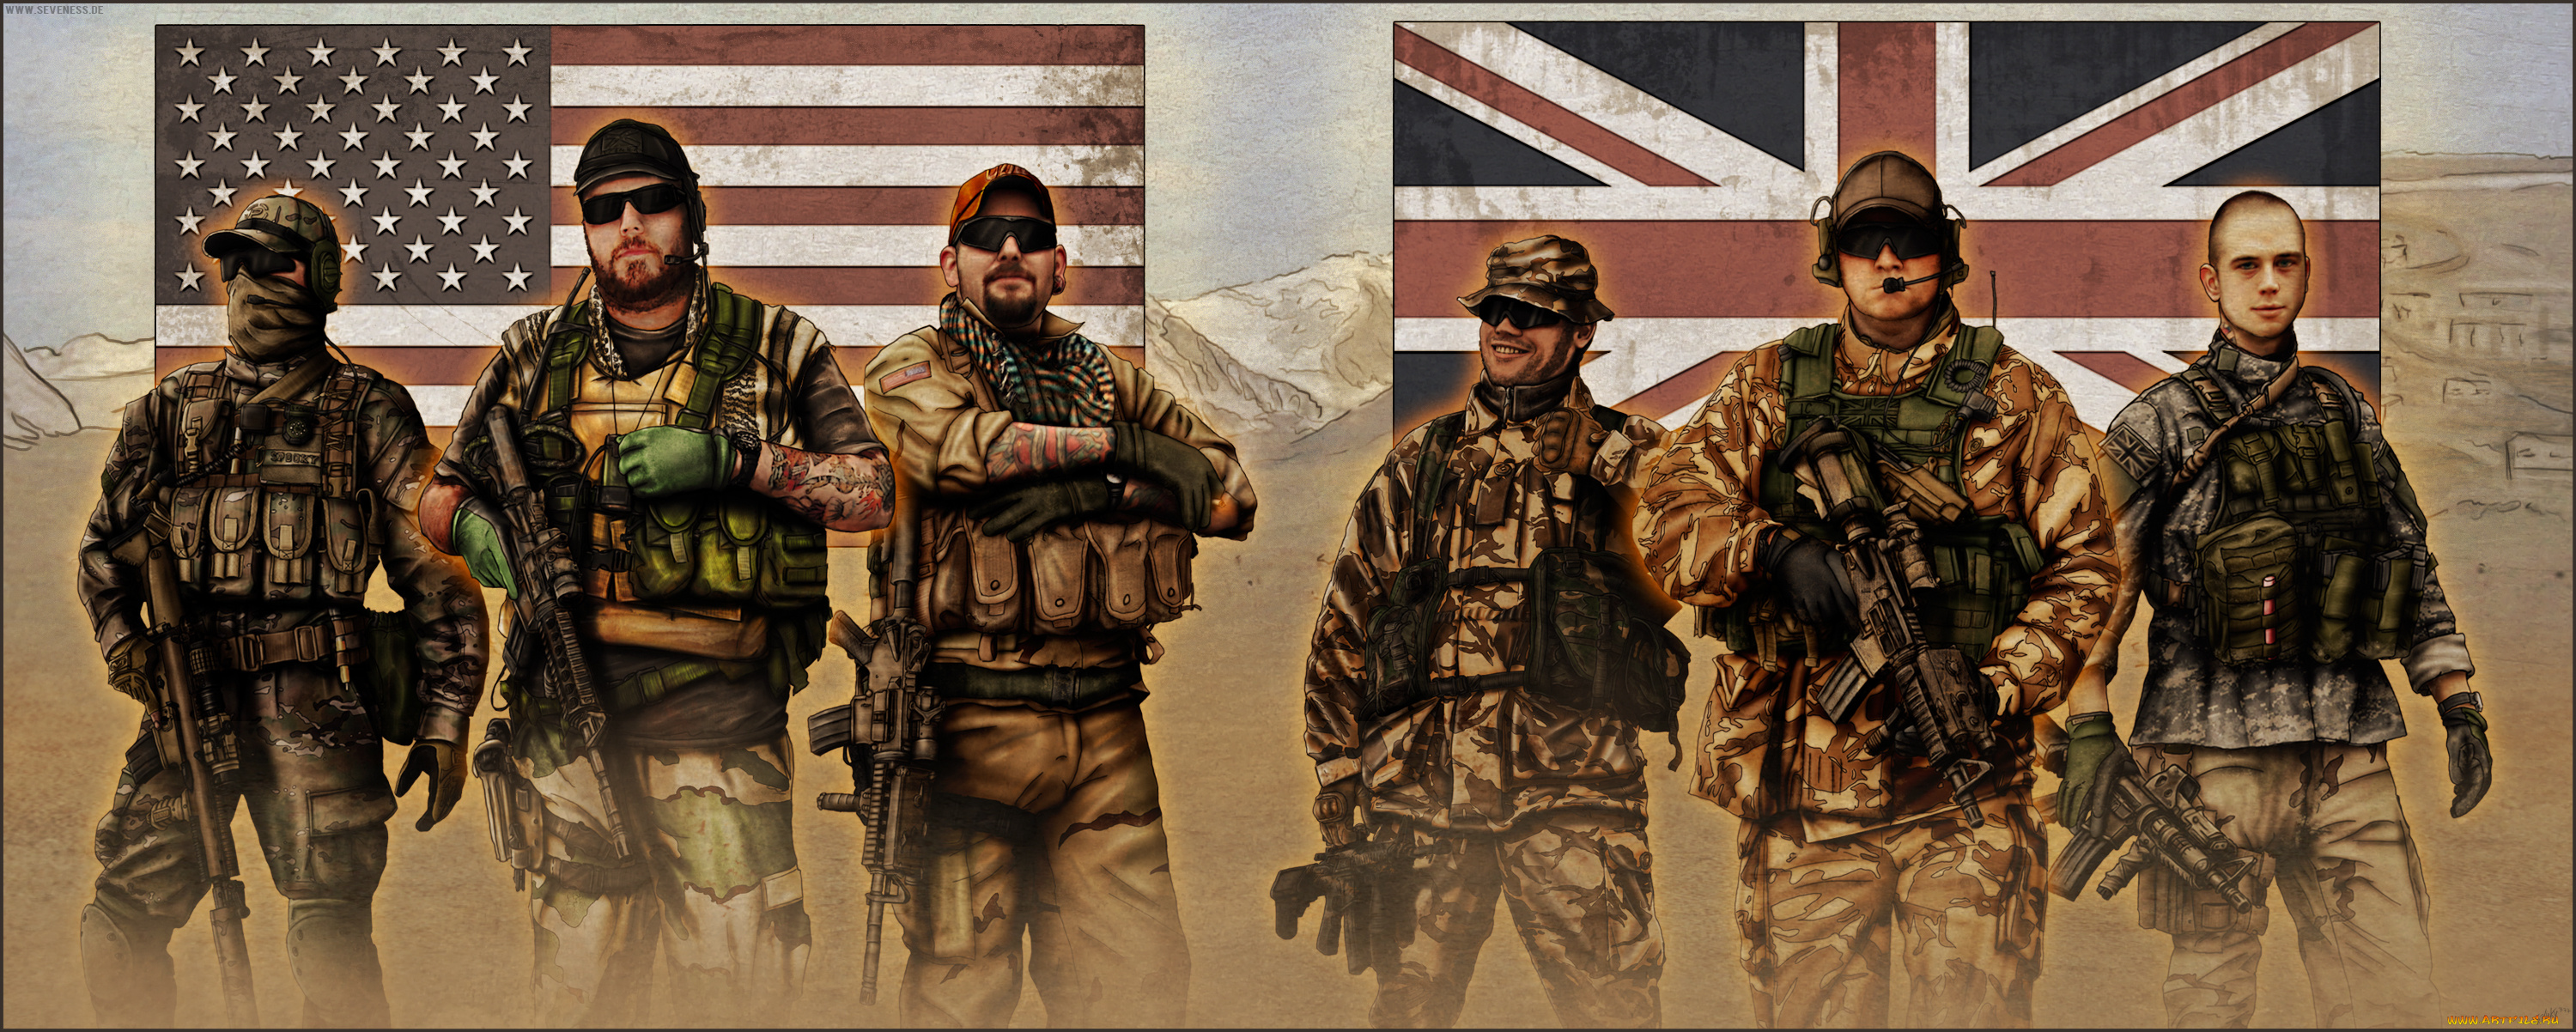 рисованное, армия, мужчины, фон, форма, оружие, флаг